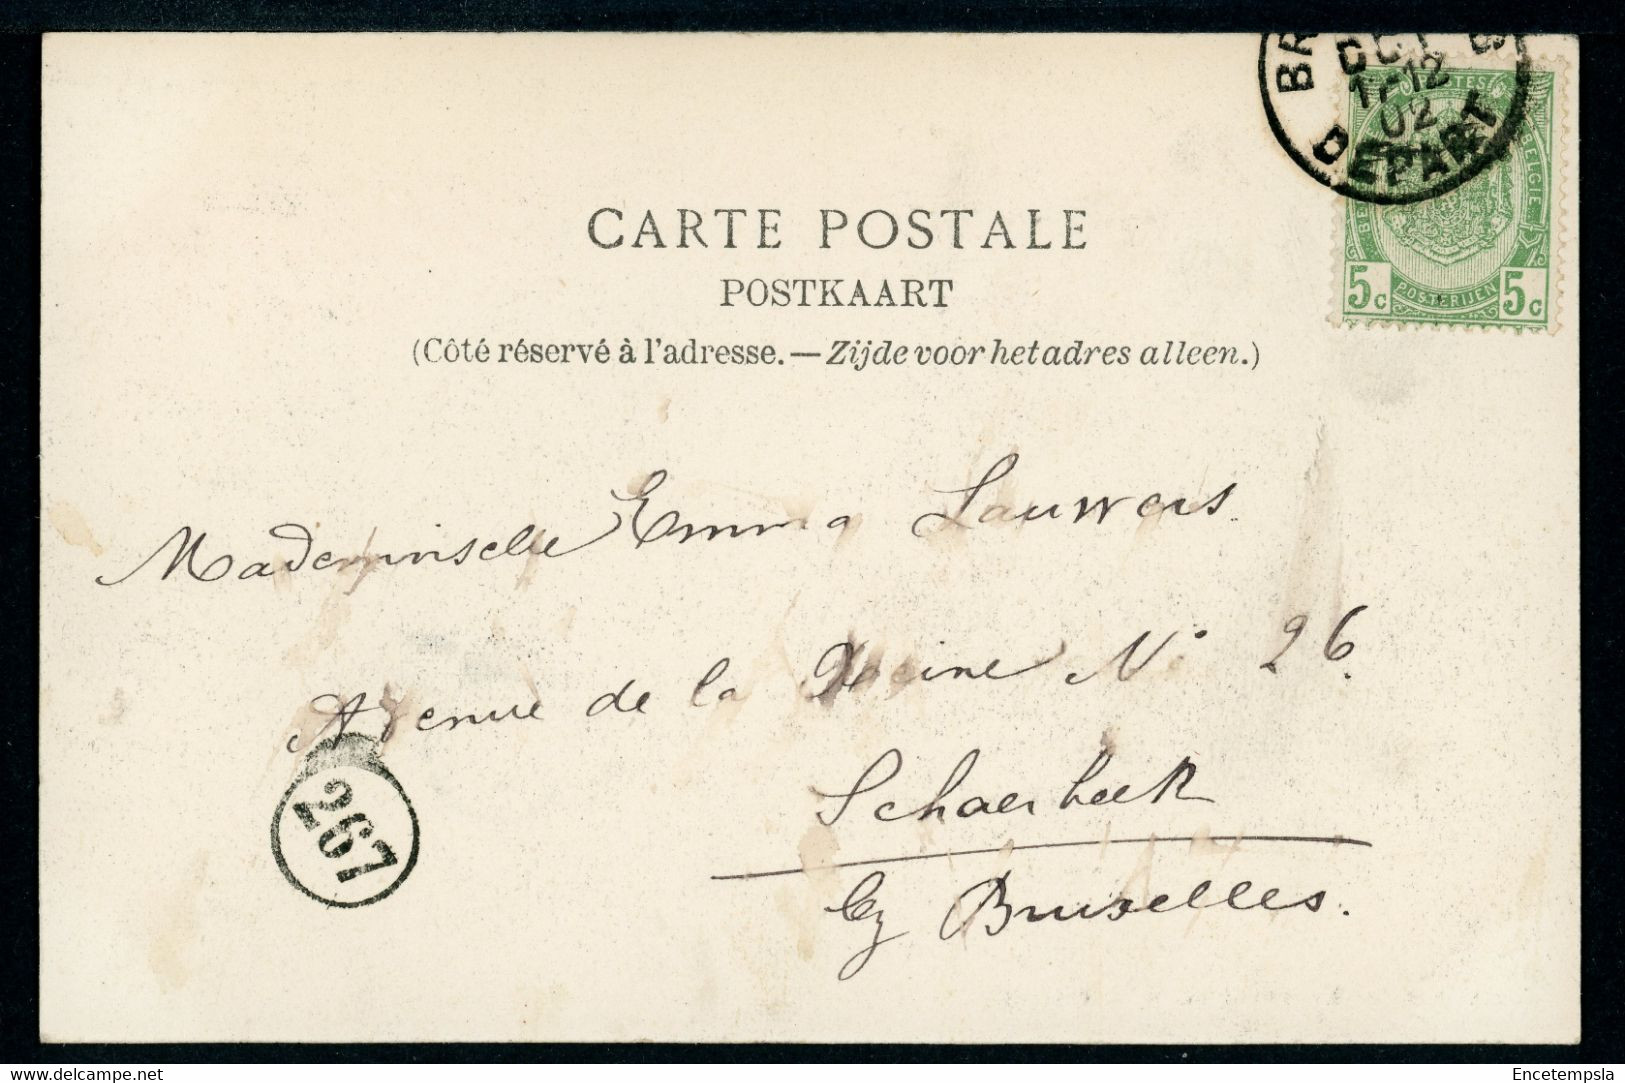 CPA - Carte Postale - Belgique - Bruxelles - Le Canal De Willebroeck - 1902  (CP20371OK) - Navigazione